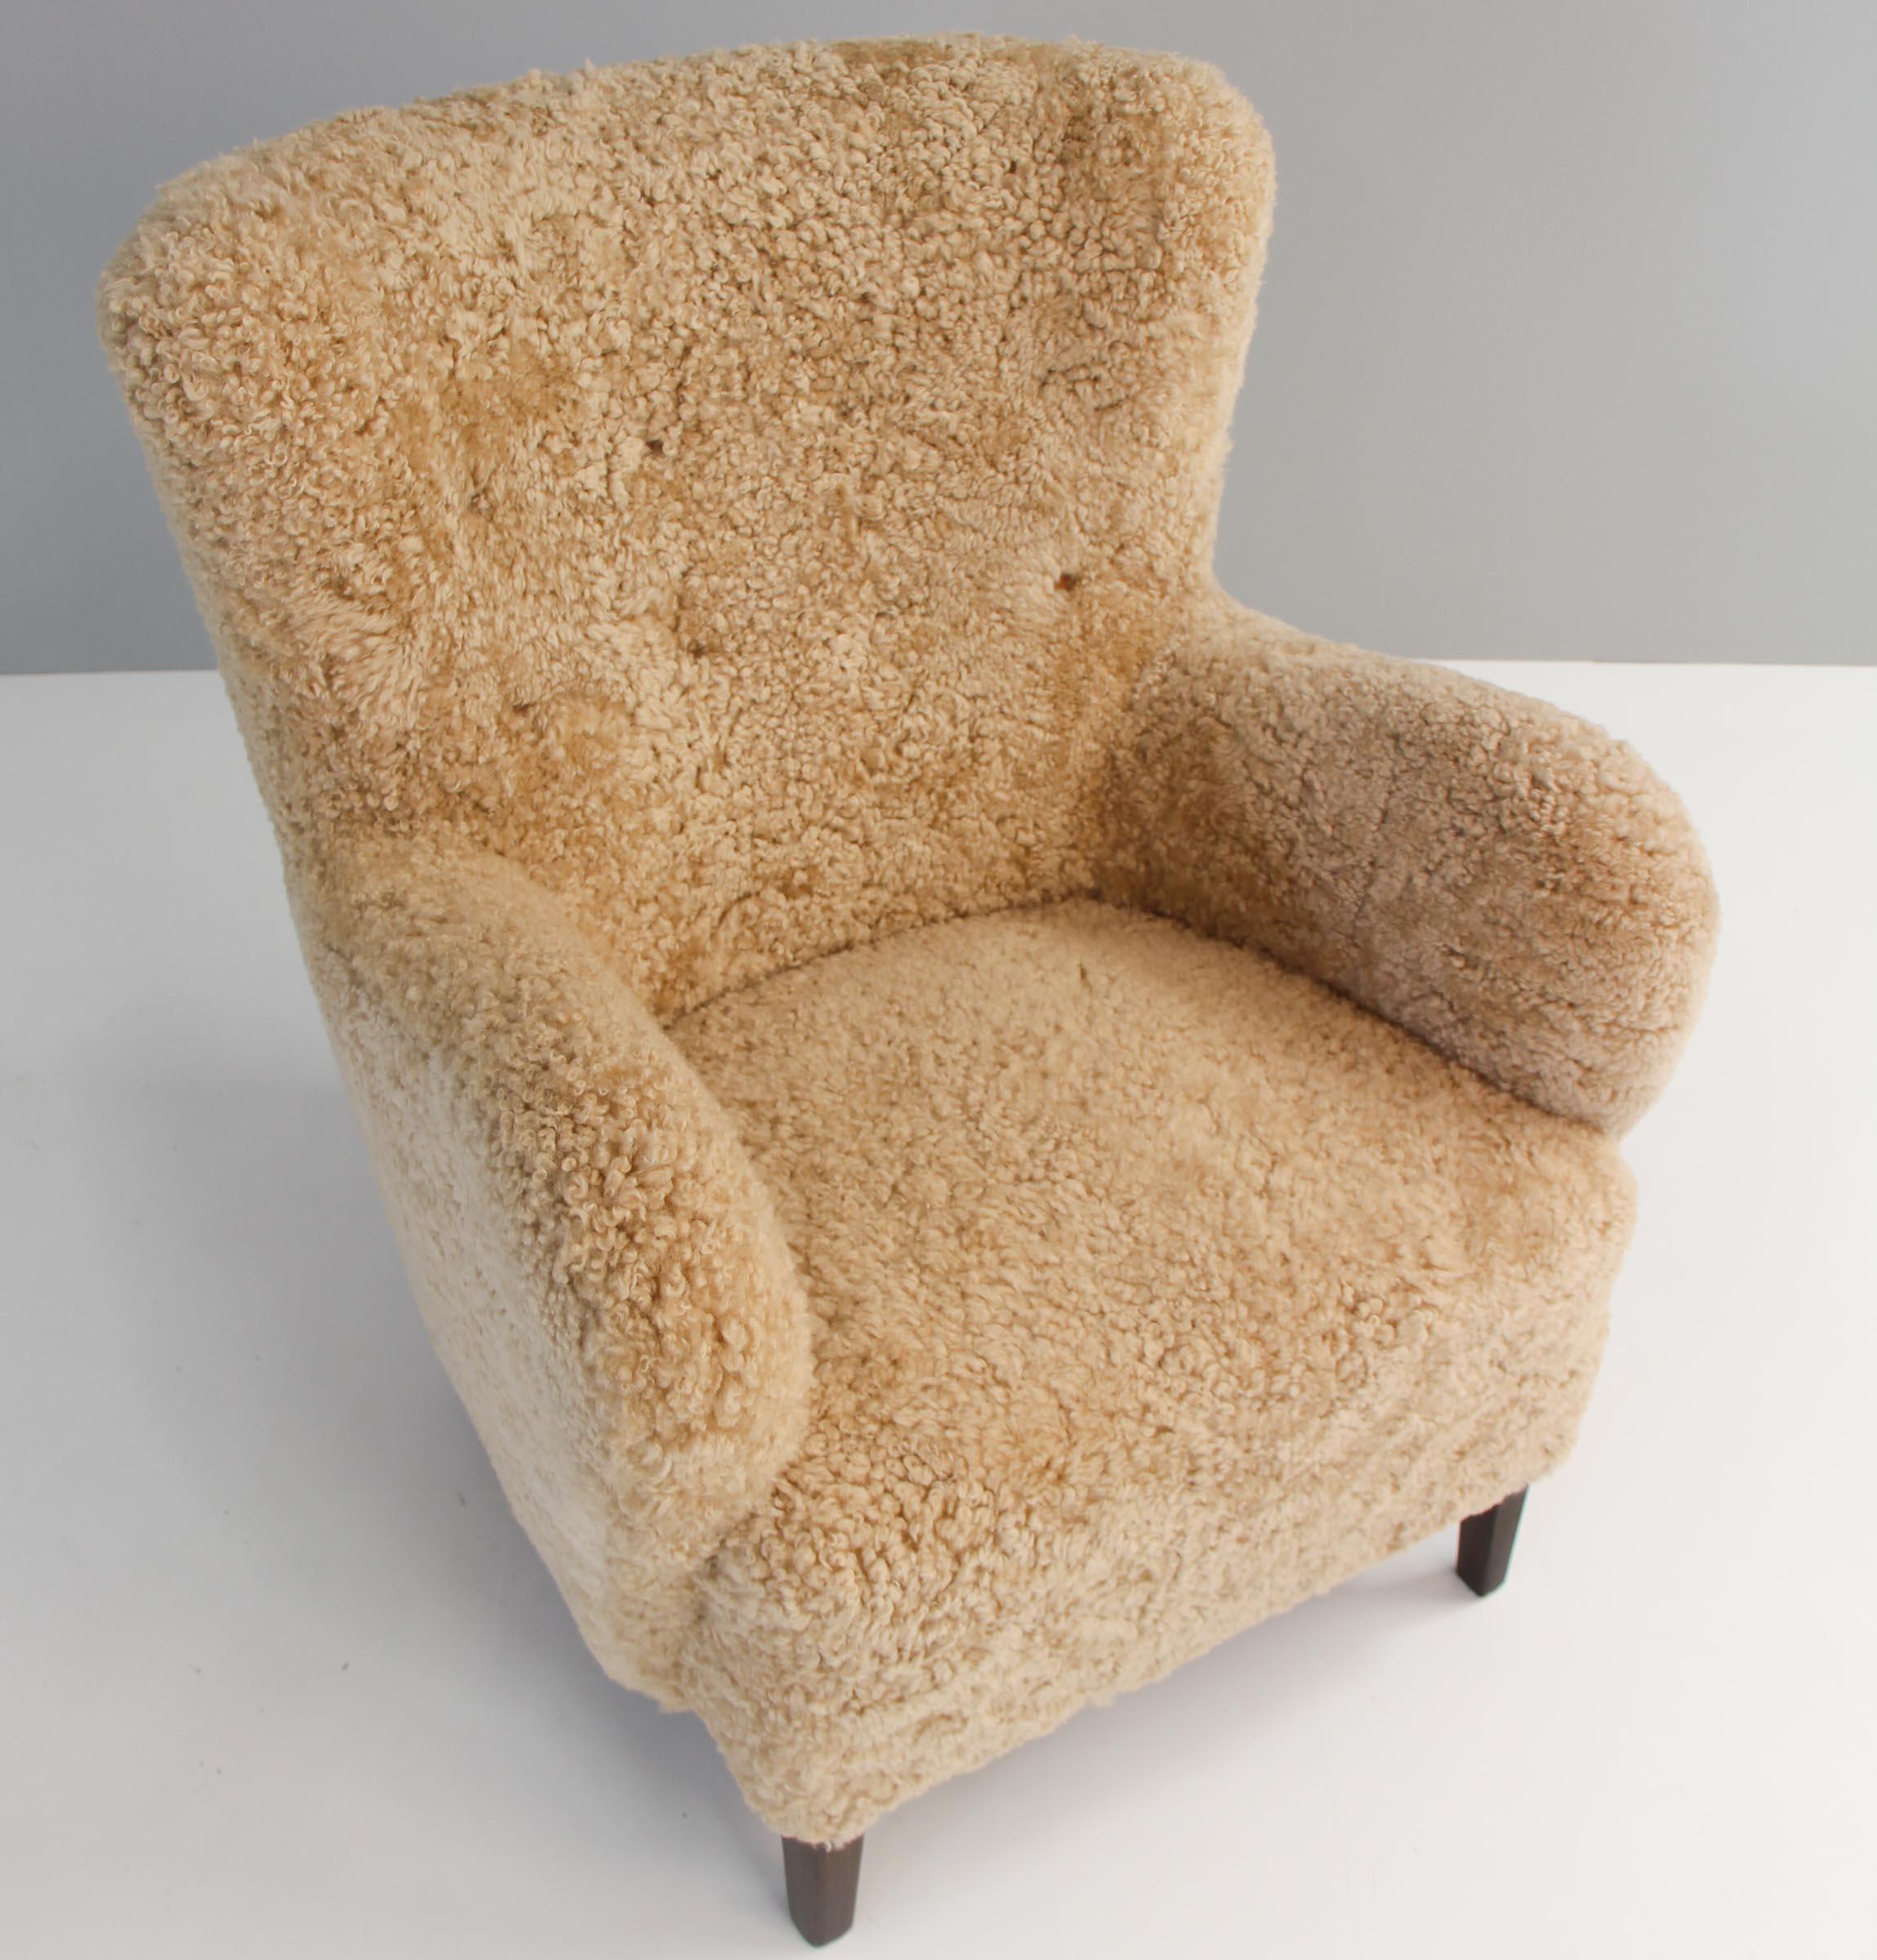 Chaise de salon d'ébéniste danois nouvellement tapissée de cuir d'agneau miel avec boutons en cuir. 

Pieds en hêtre teinté.

Fabriqué dans les années 1940.